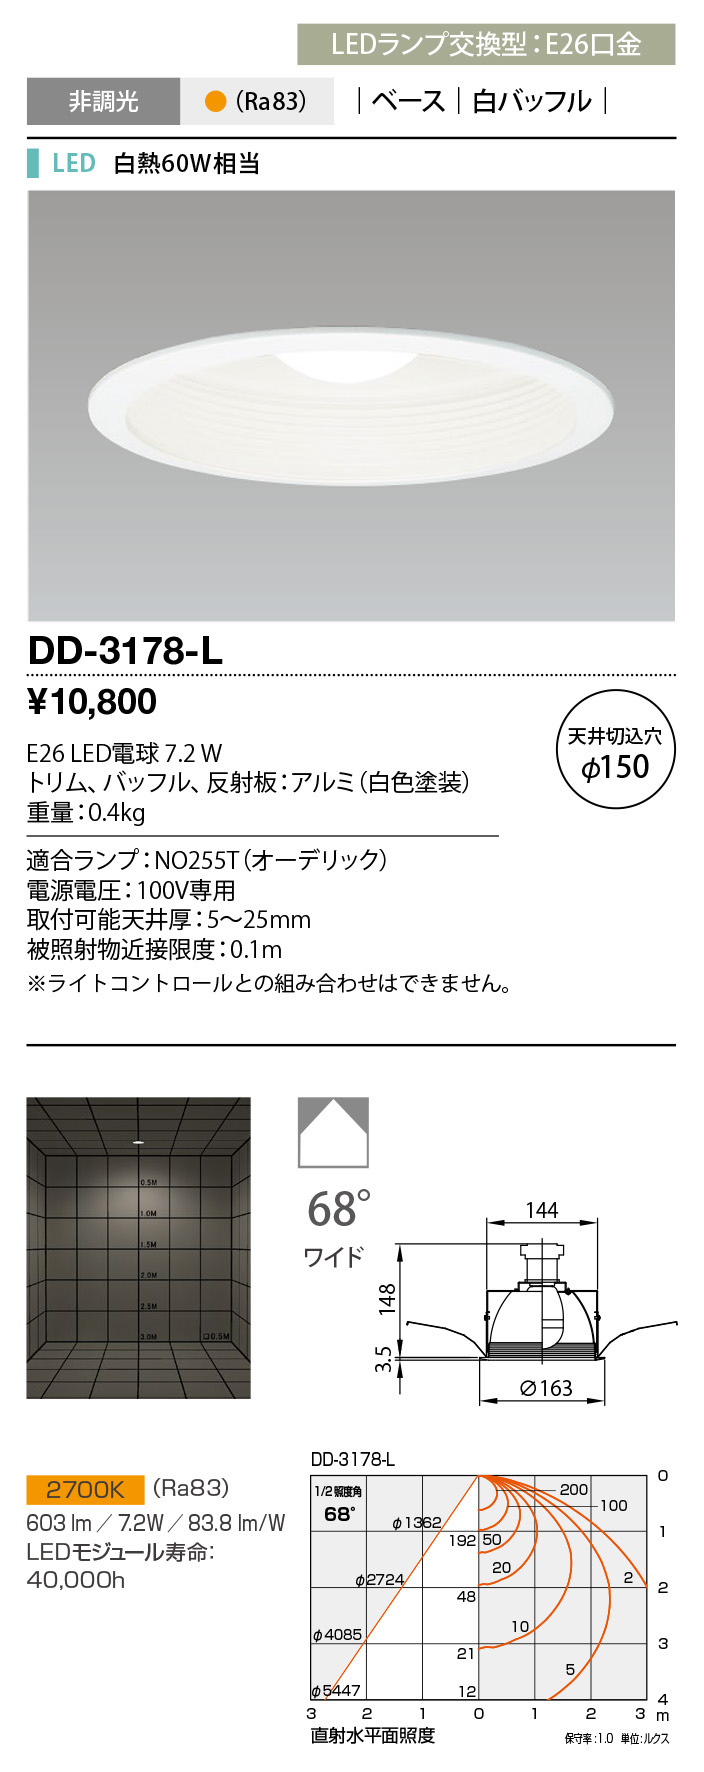 DD-3178-L